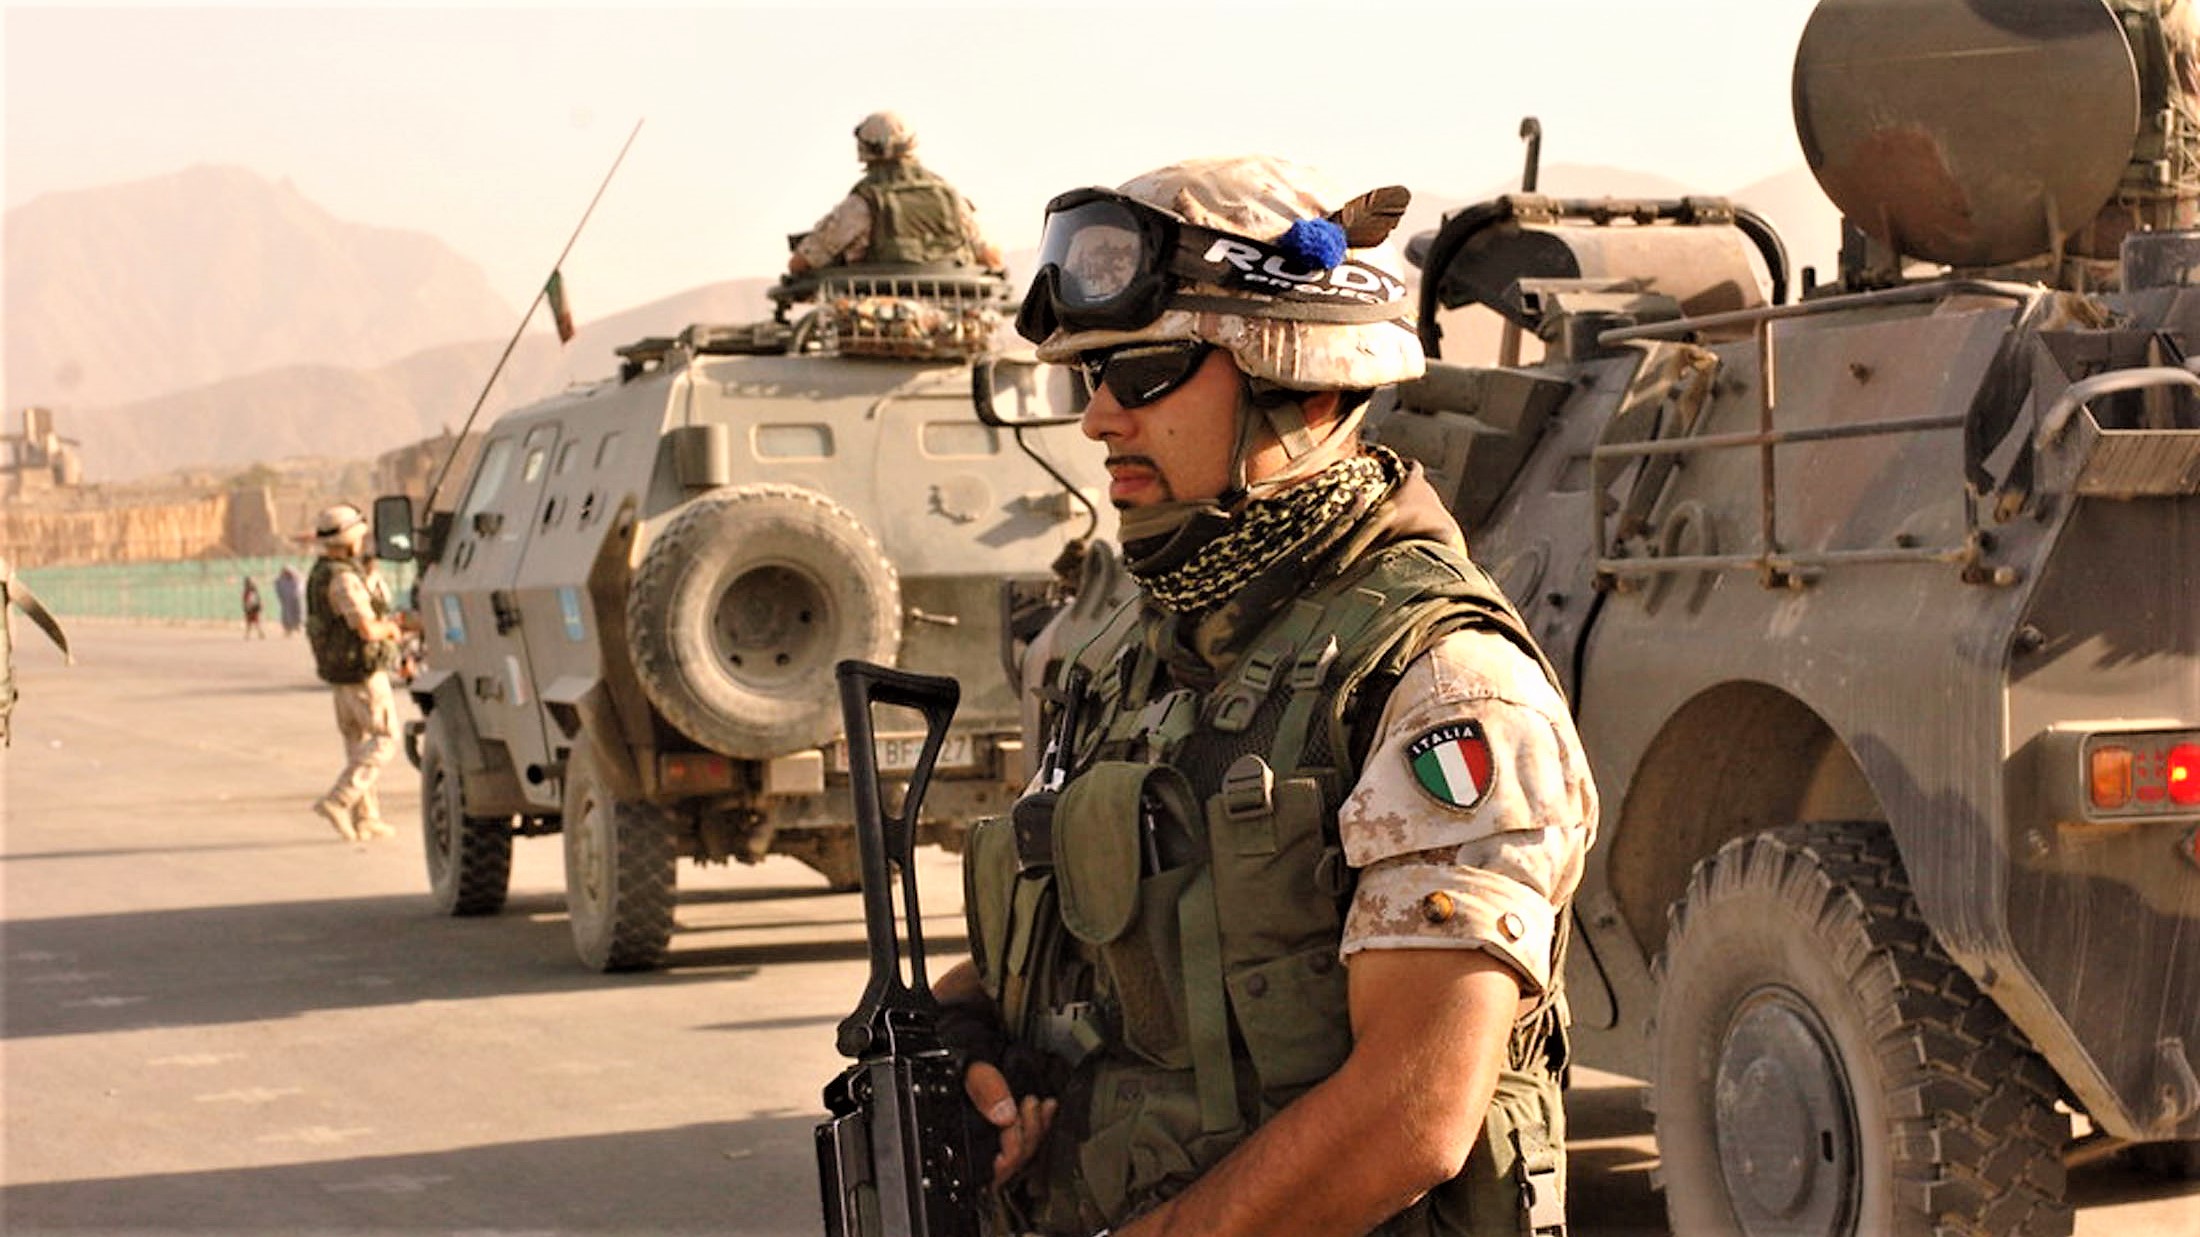 Eplode ordigno in Iraq, 5 soldati italiani feriti. Procura italiana indaga per terrorismo